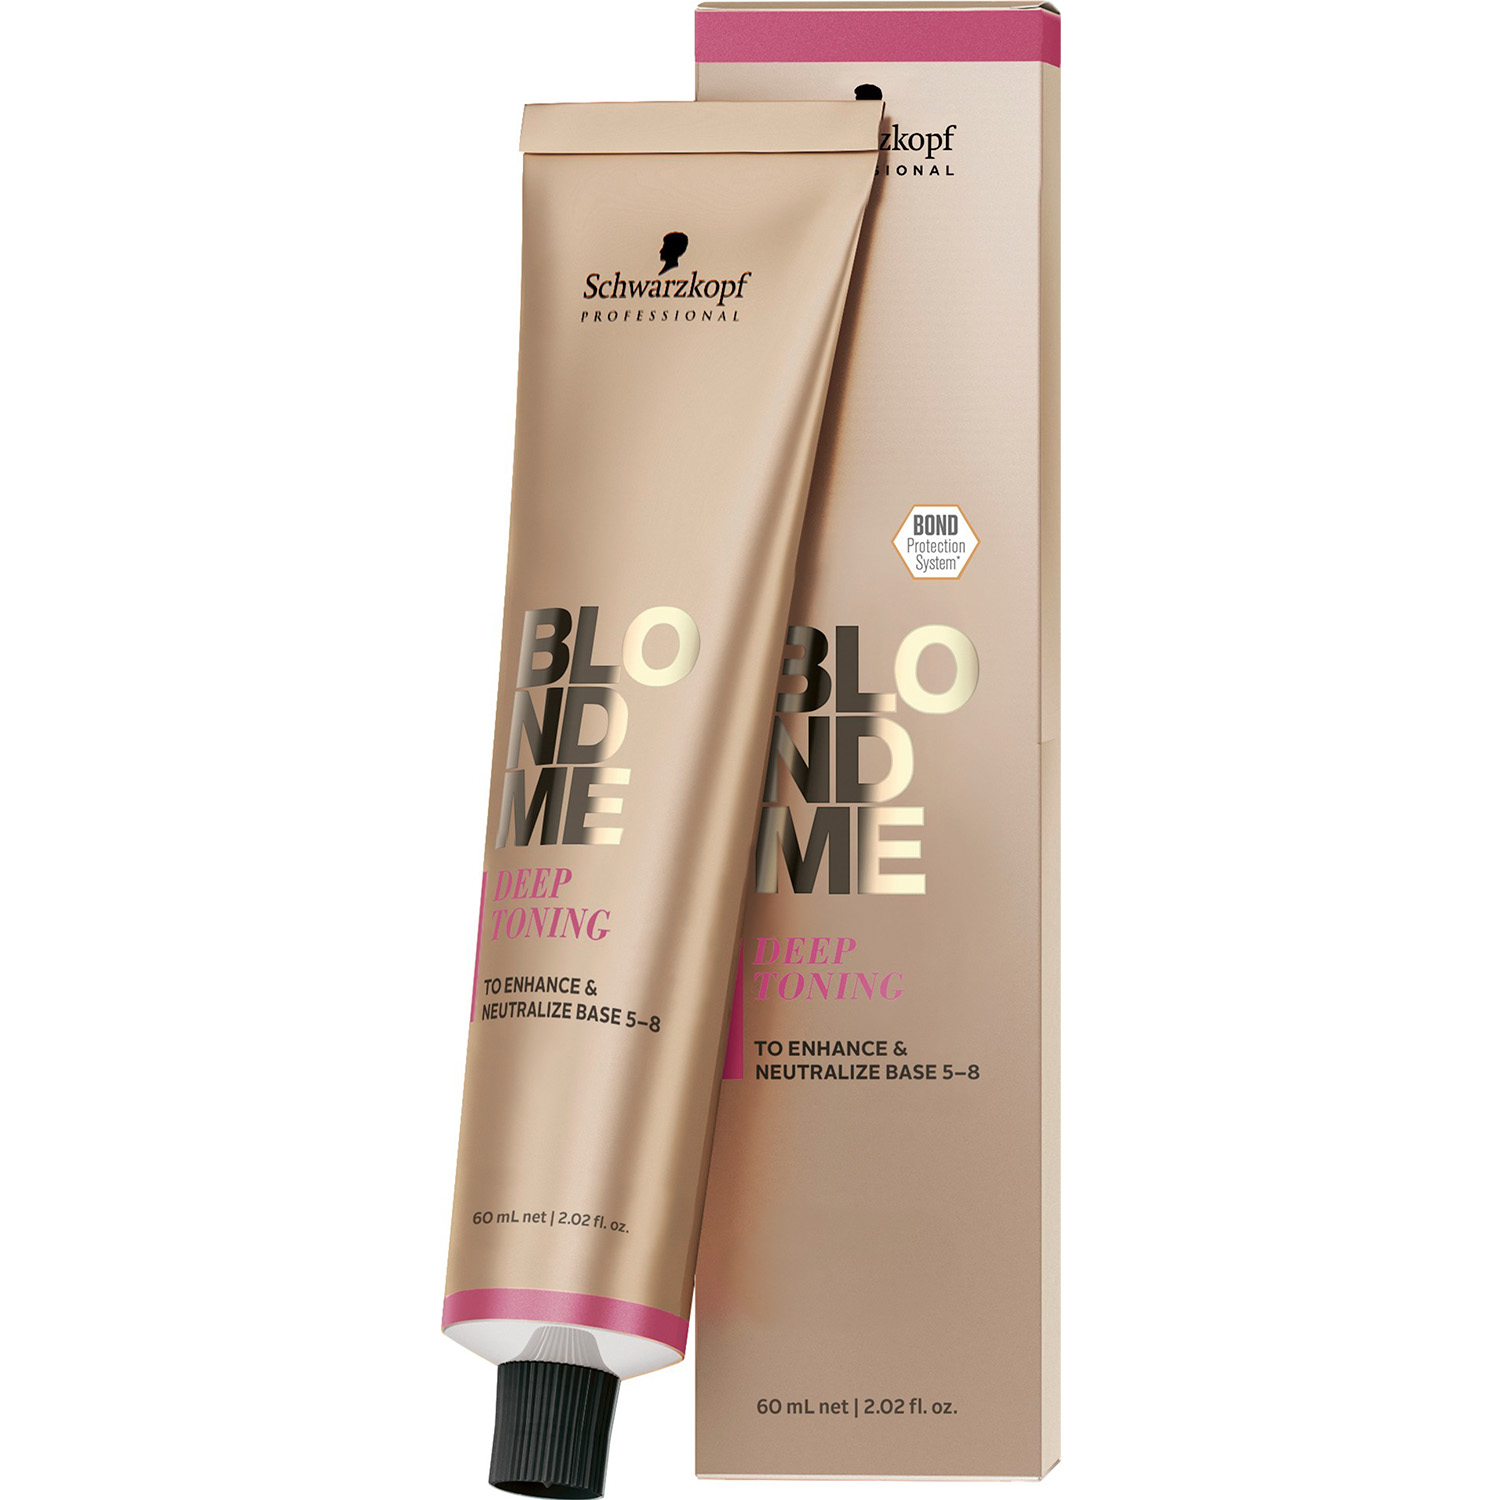 Бондінг-крем для волосся Schwarzkopf Professional BlondMe Deep Toning, відтінок персиковий сорбет, 60 мл - фото 1